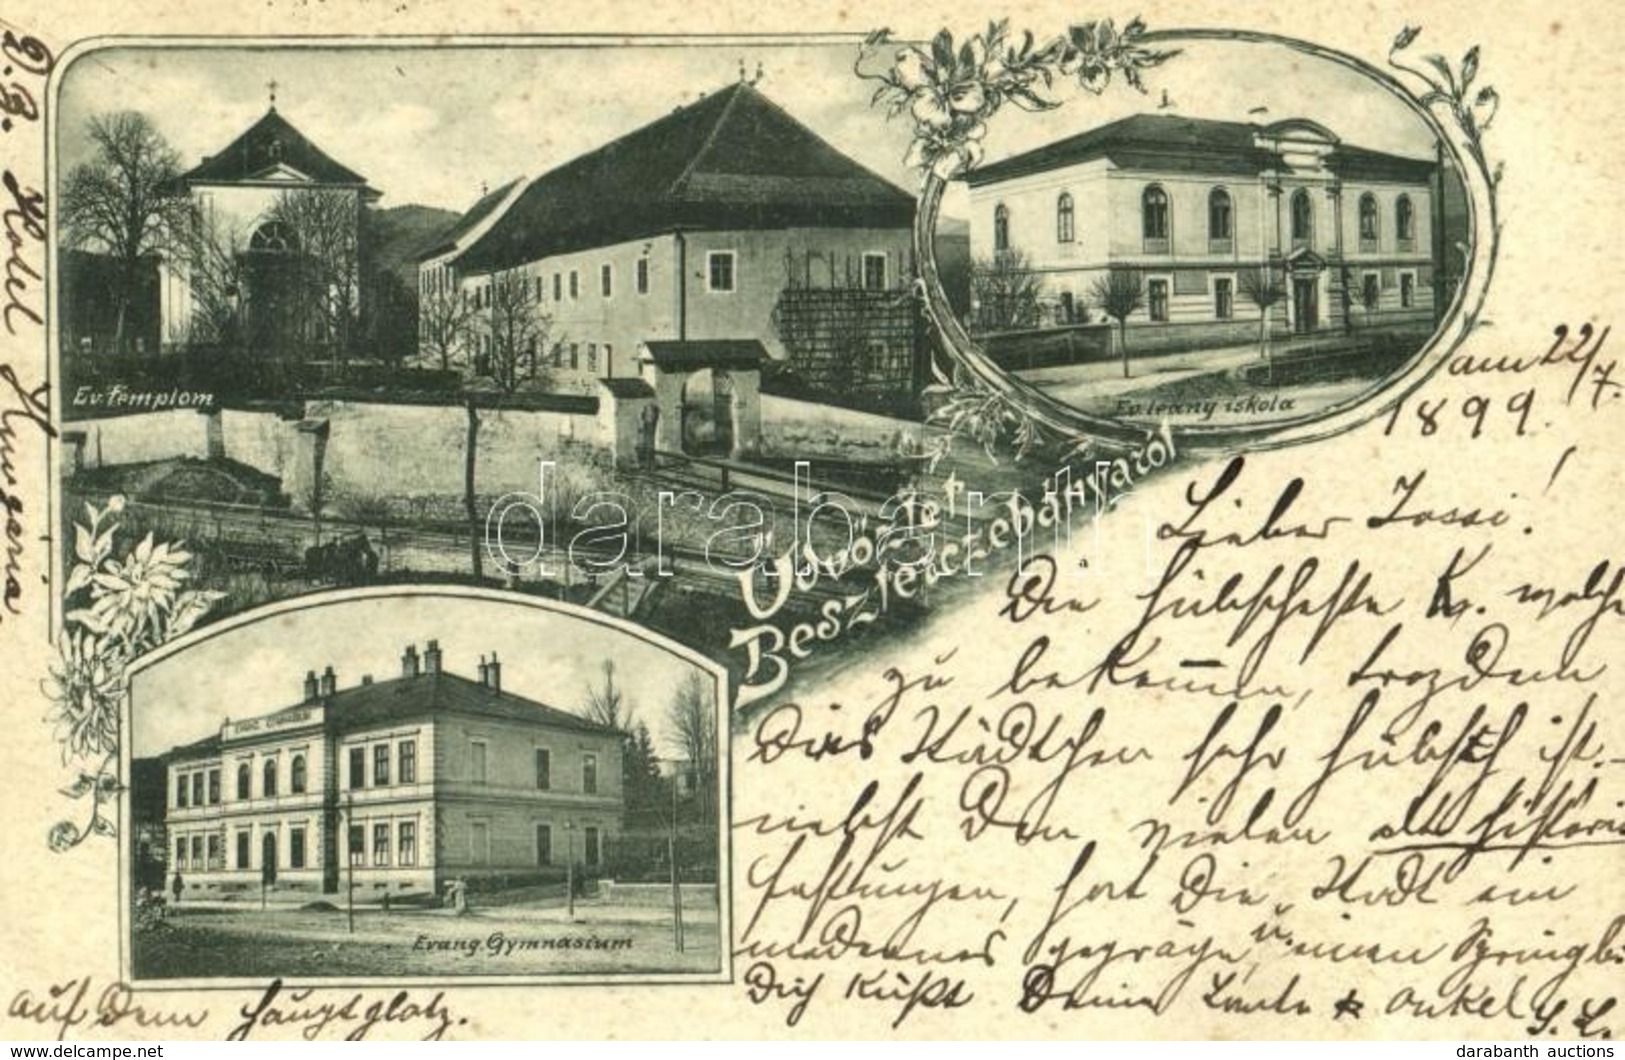 T2/T3 1899 (Vorläufer!) Besztercebánya, Banská Bystrica; Evangélikus Templom, Gimnázium és Leány Iskola / Lutheran Churc - Ohne Zuordnung